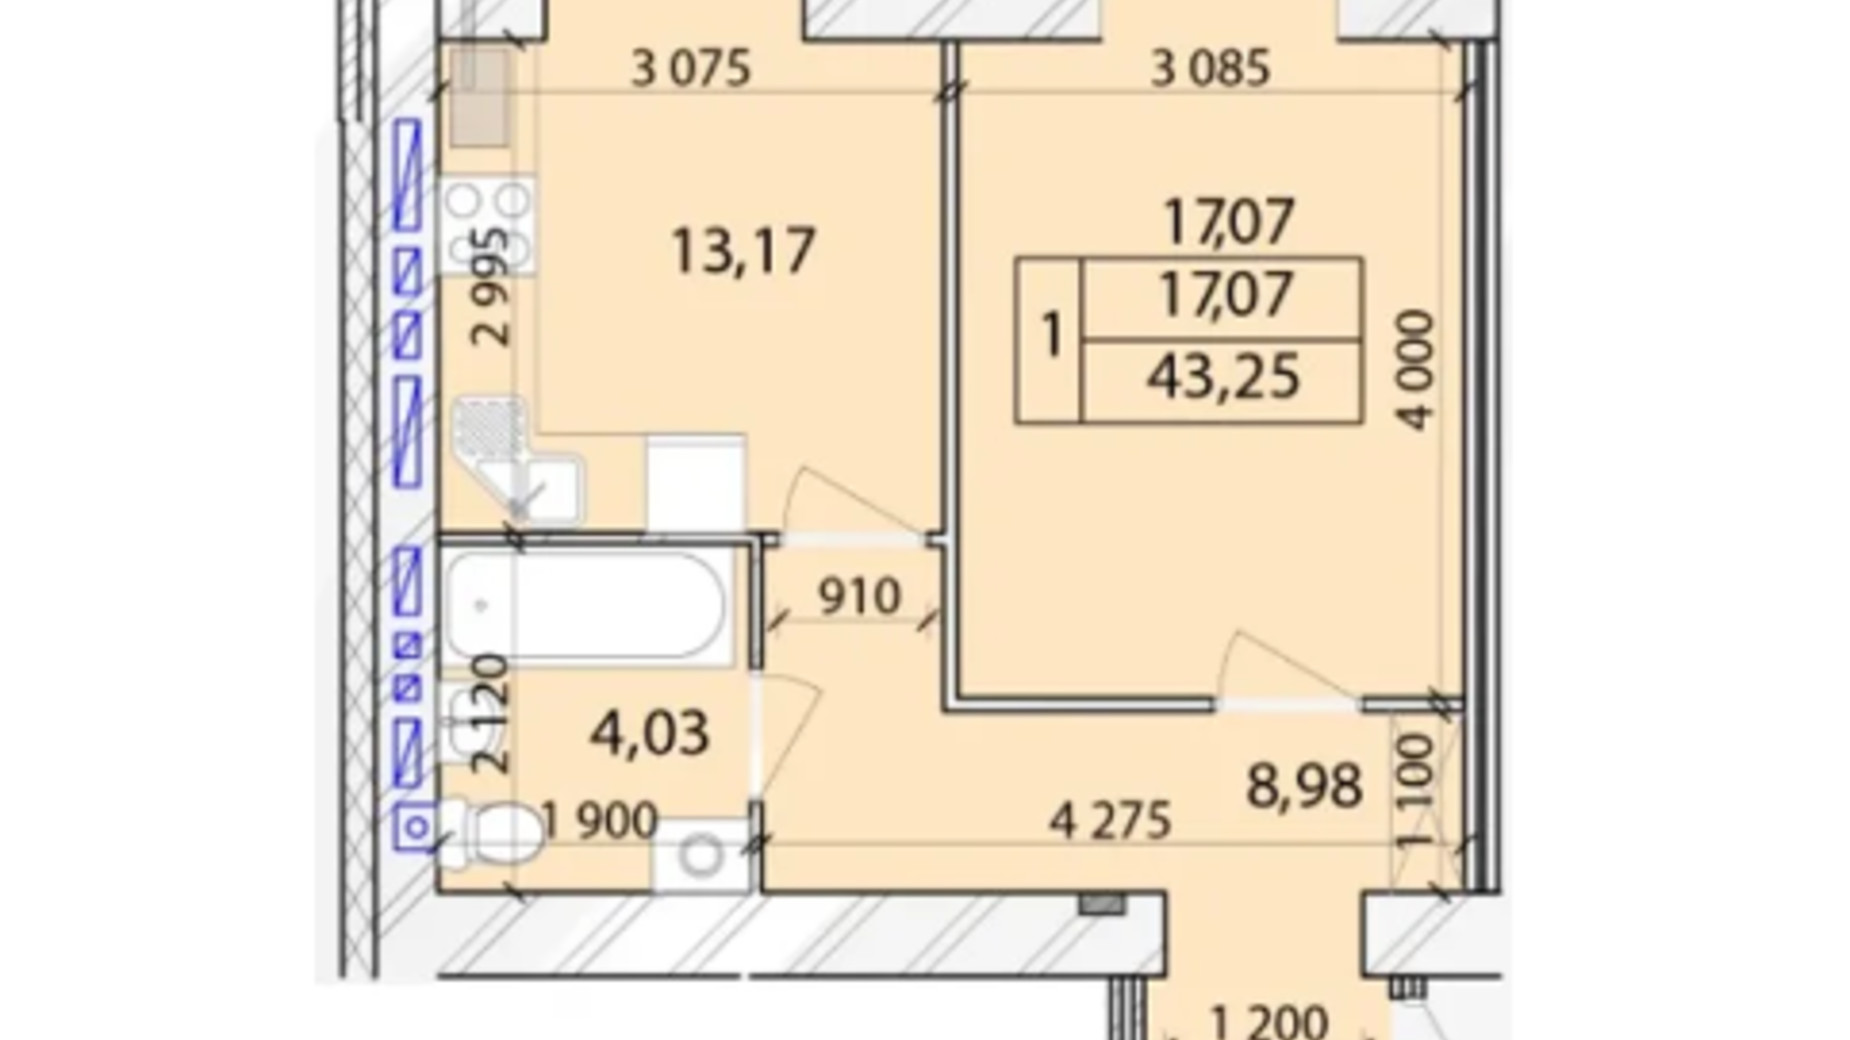 Планировка 1-комнатной квартиры в ЖК Лесной New 43.25 м², фото 675733